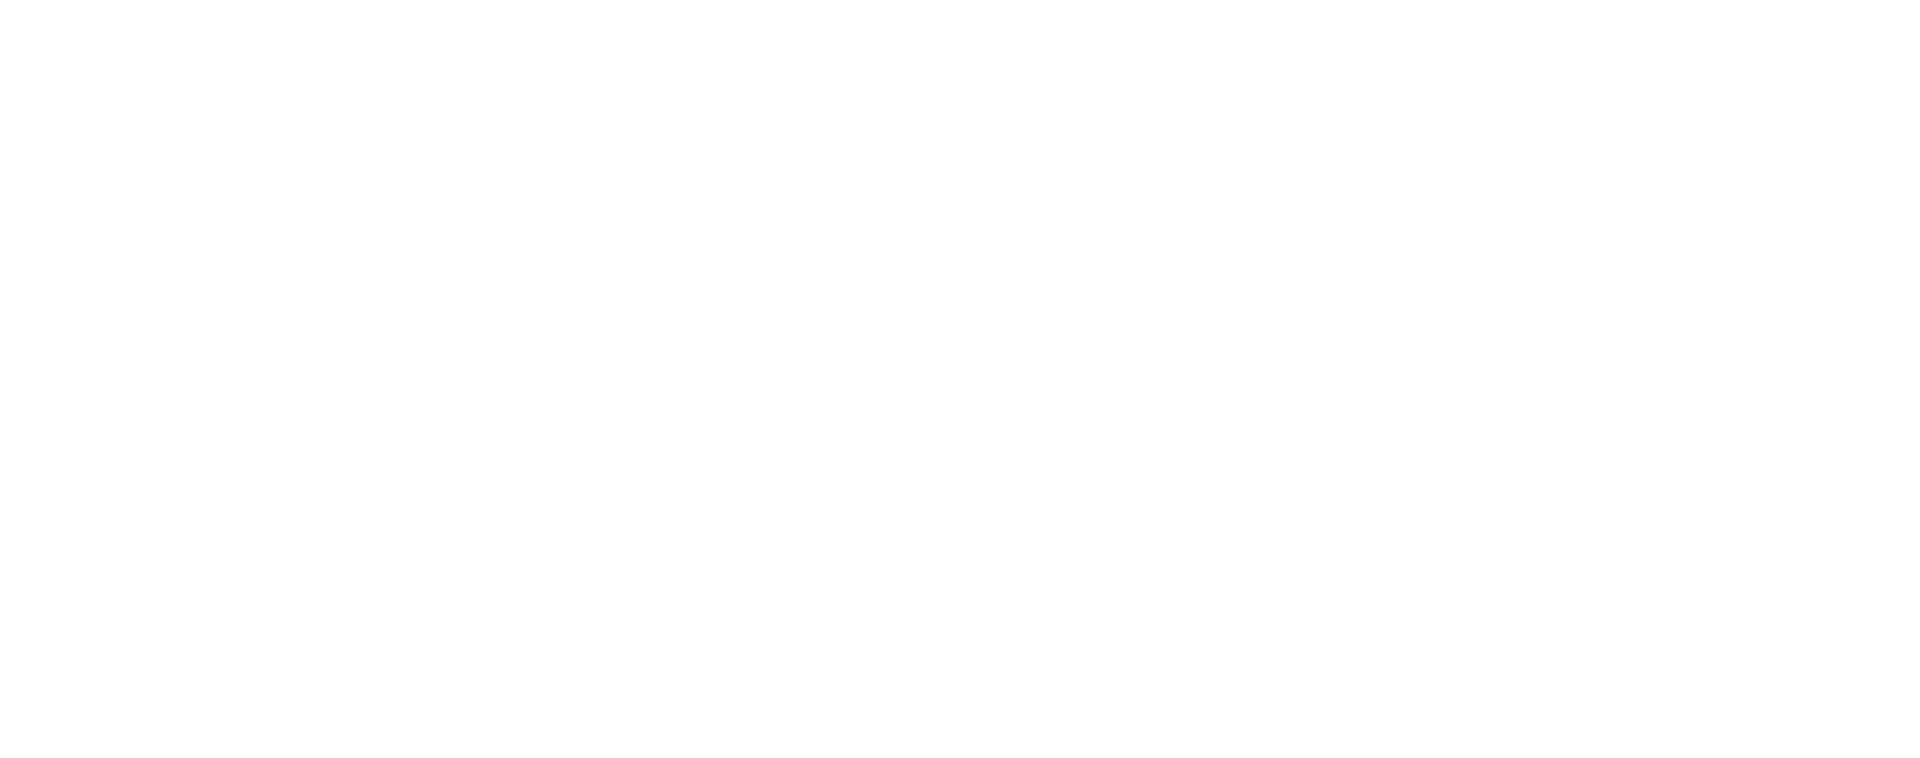 Logo Zero Bookings wit vrijstaand